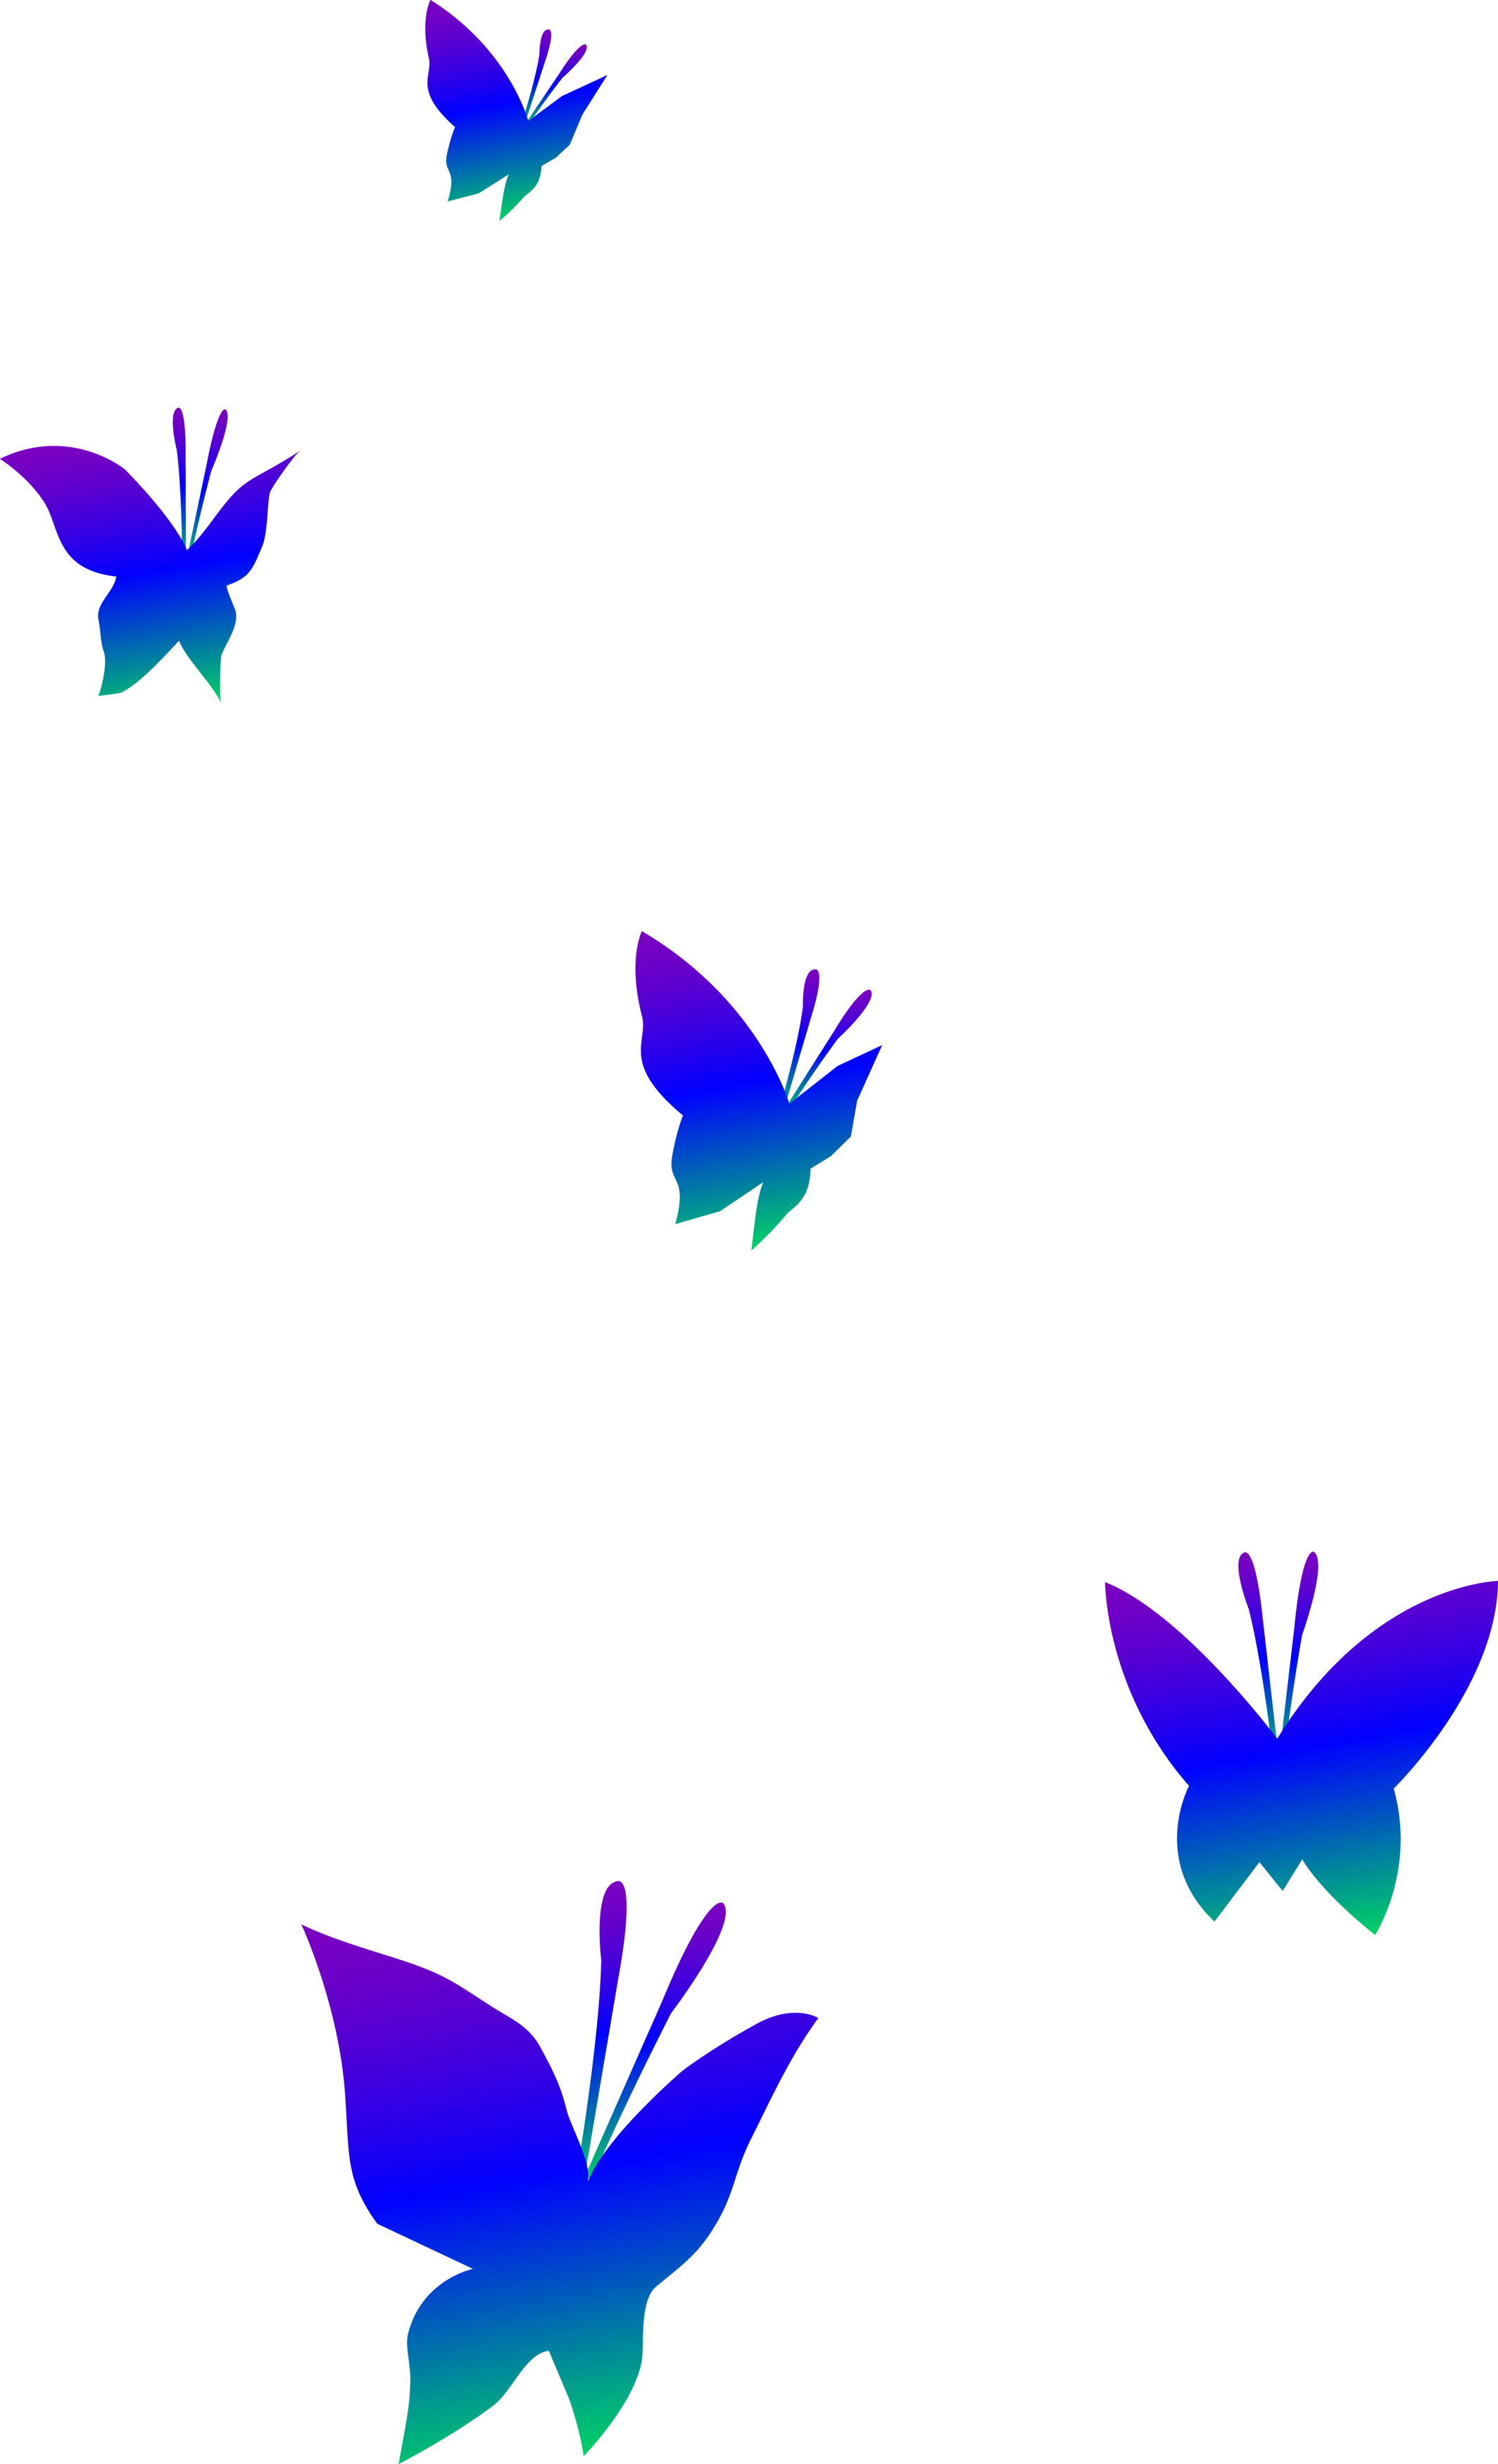 Butterflies Clip Art